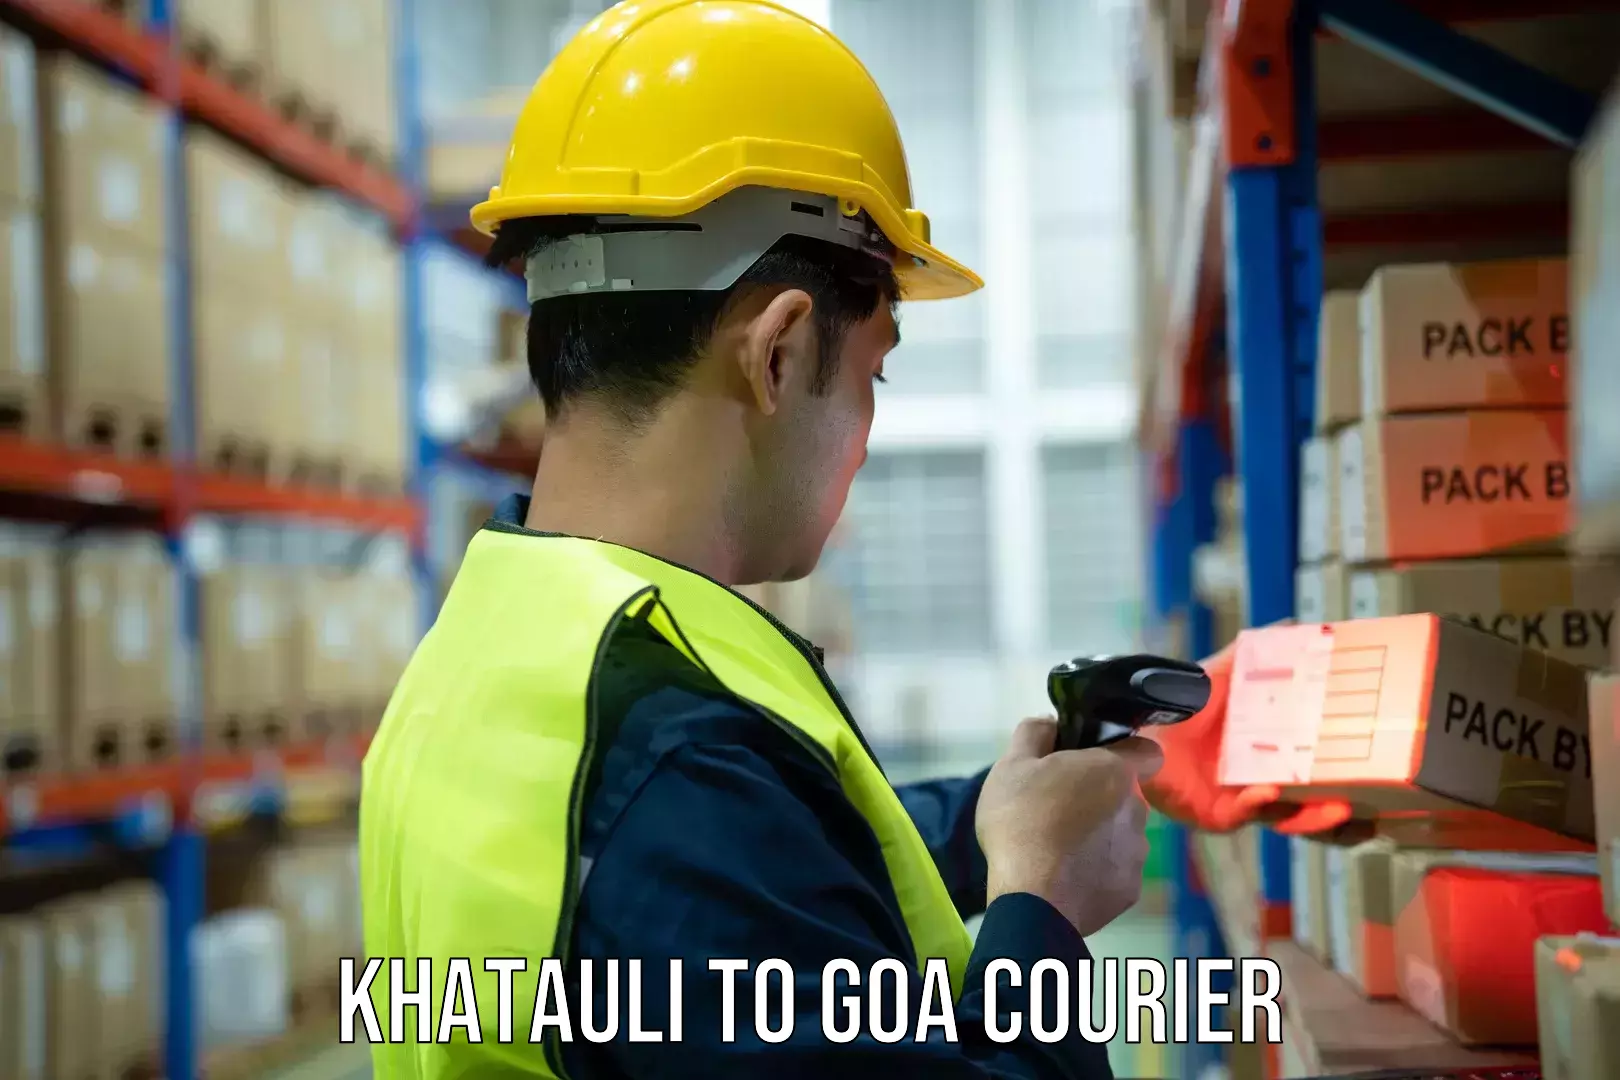 Courier rate comparison Khatauli to Panaji